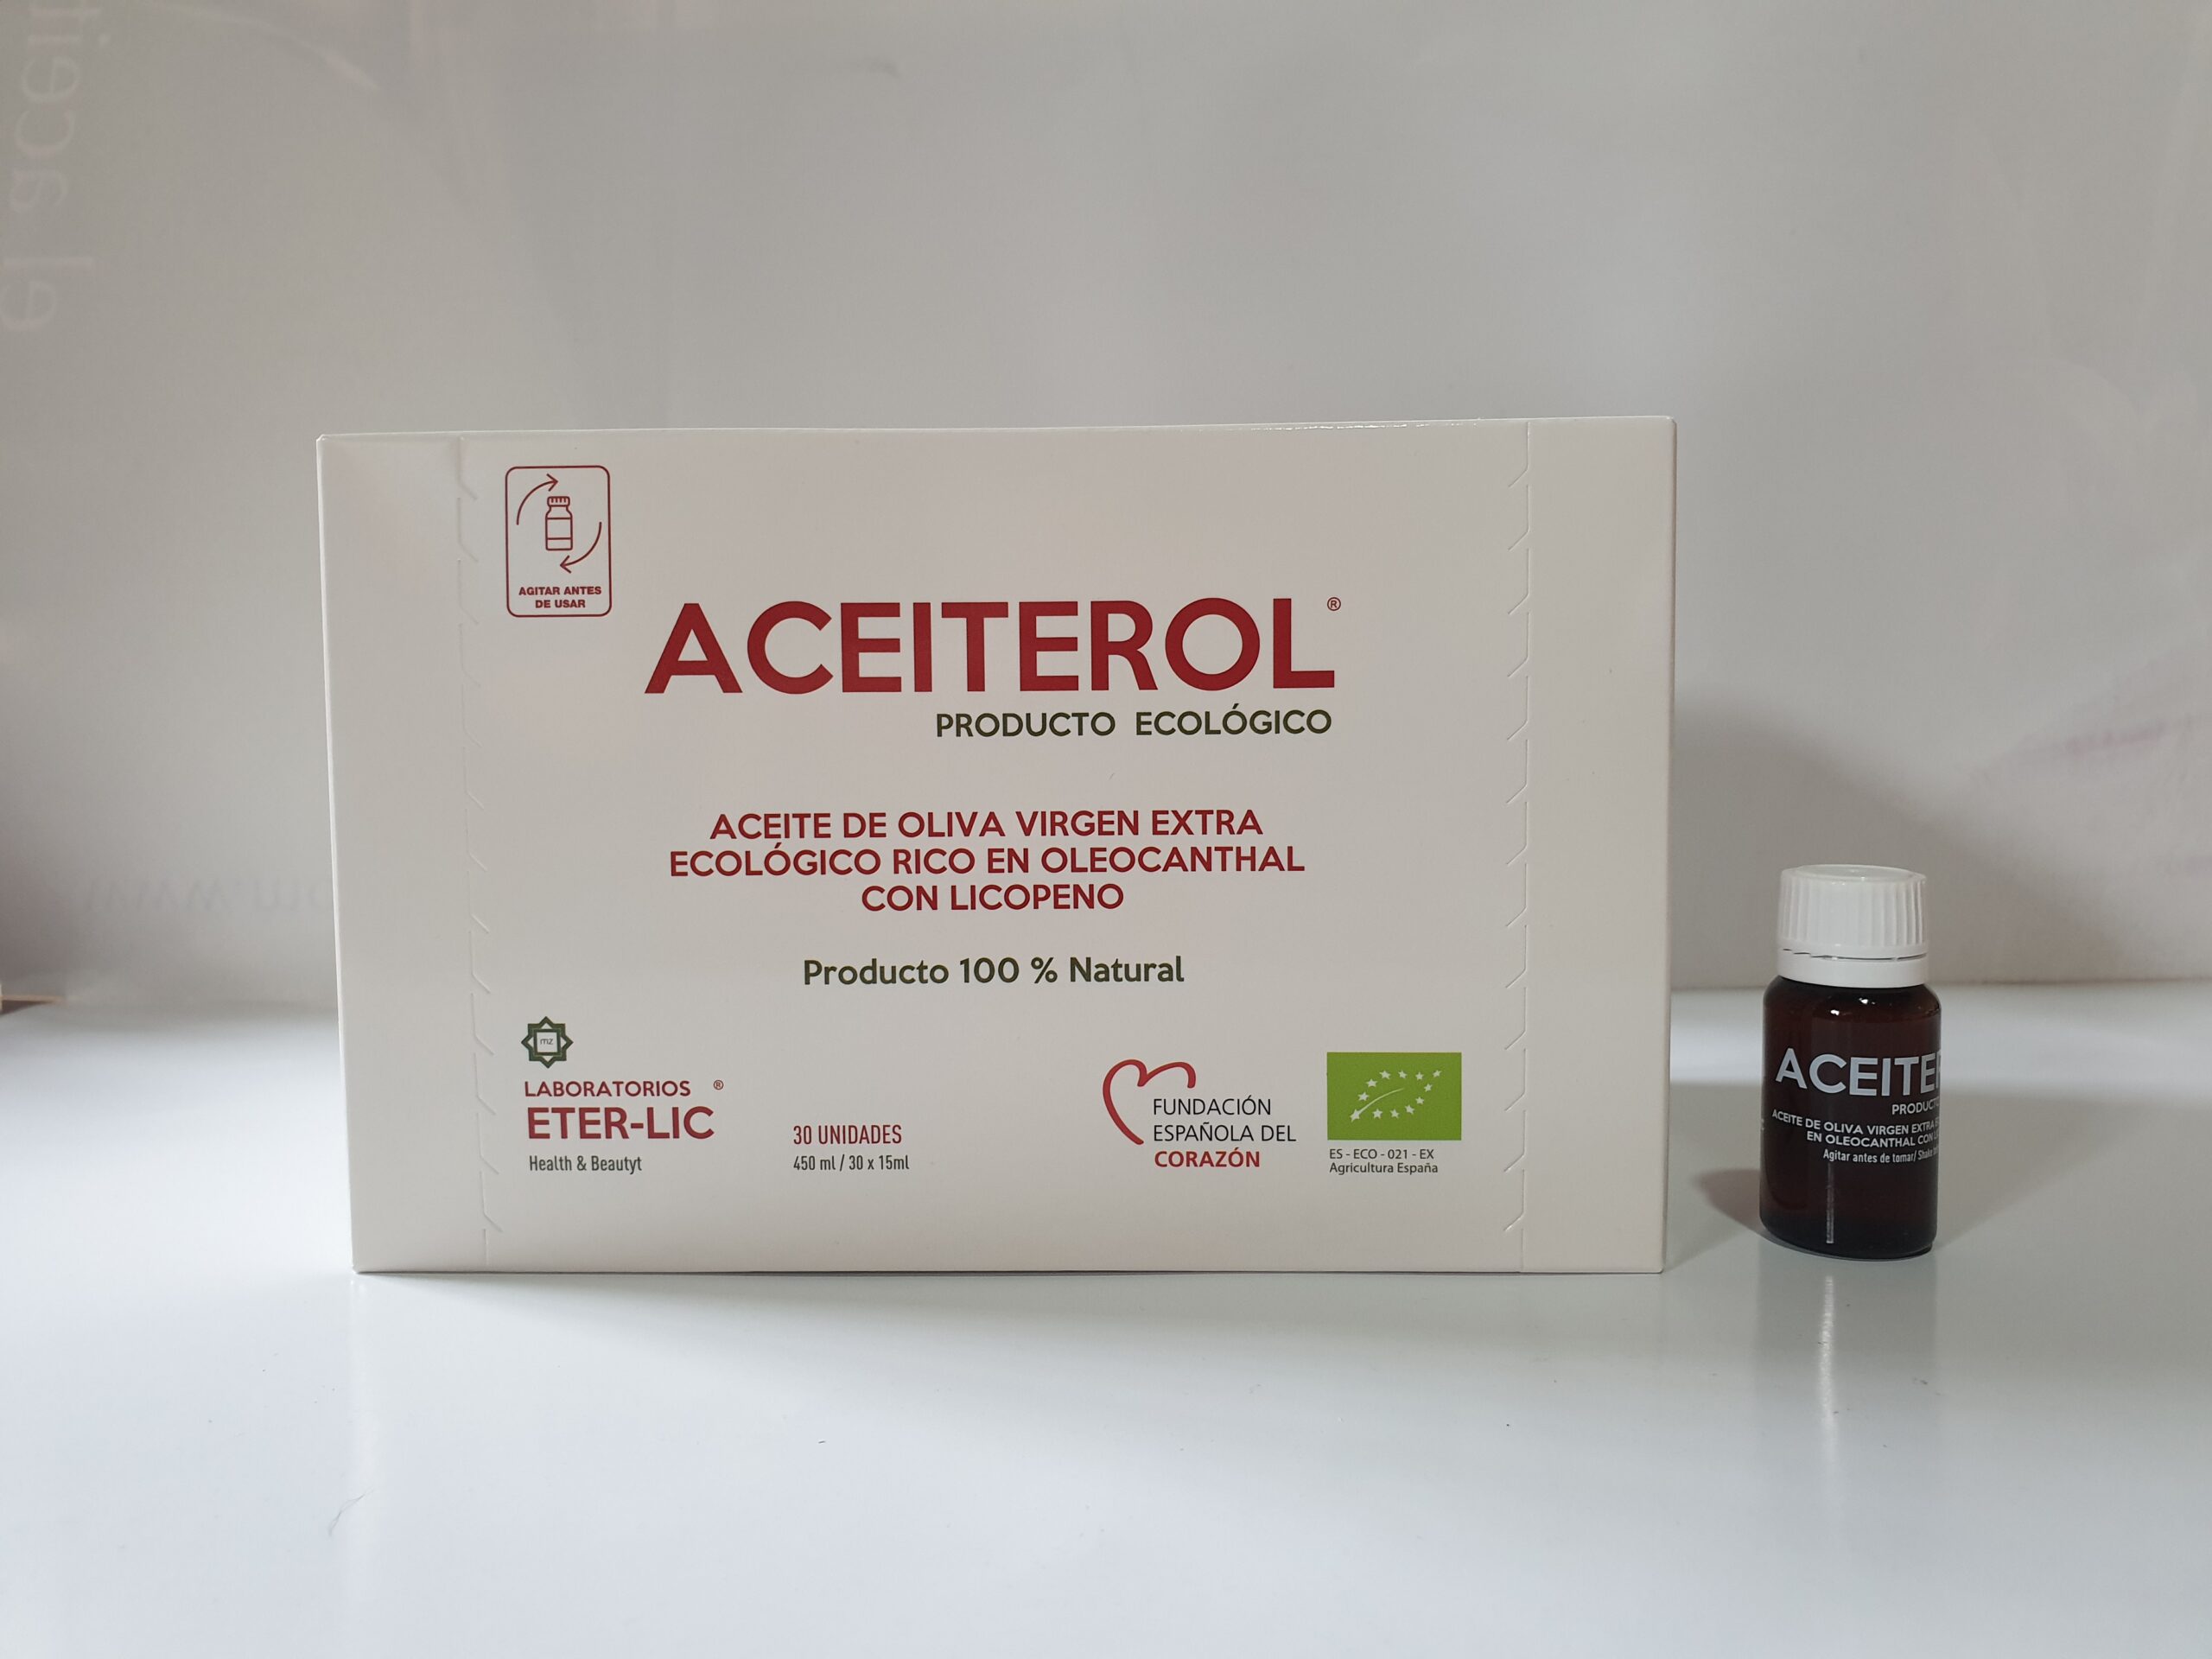 Aceiterol . Reduce el colesterol